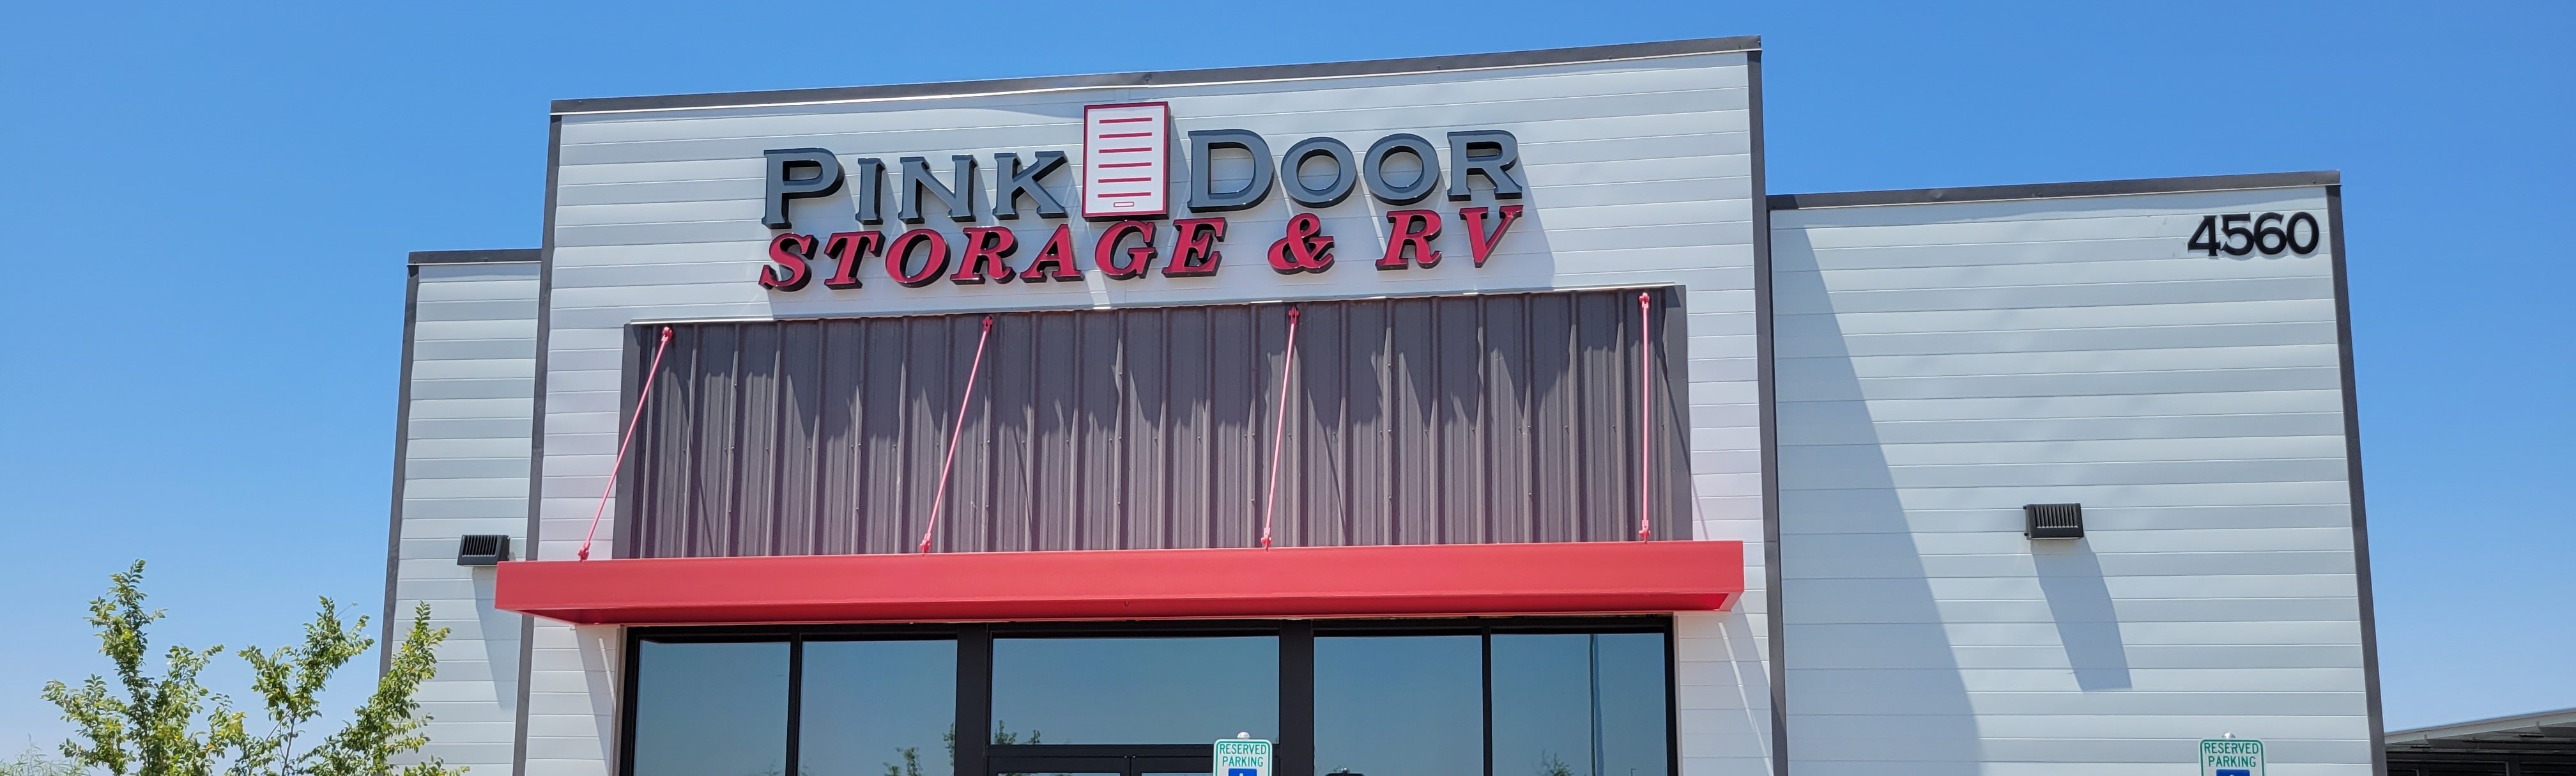 Pink Door Storage & RV - Gilbert Storefront